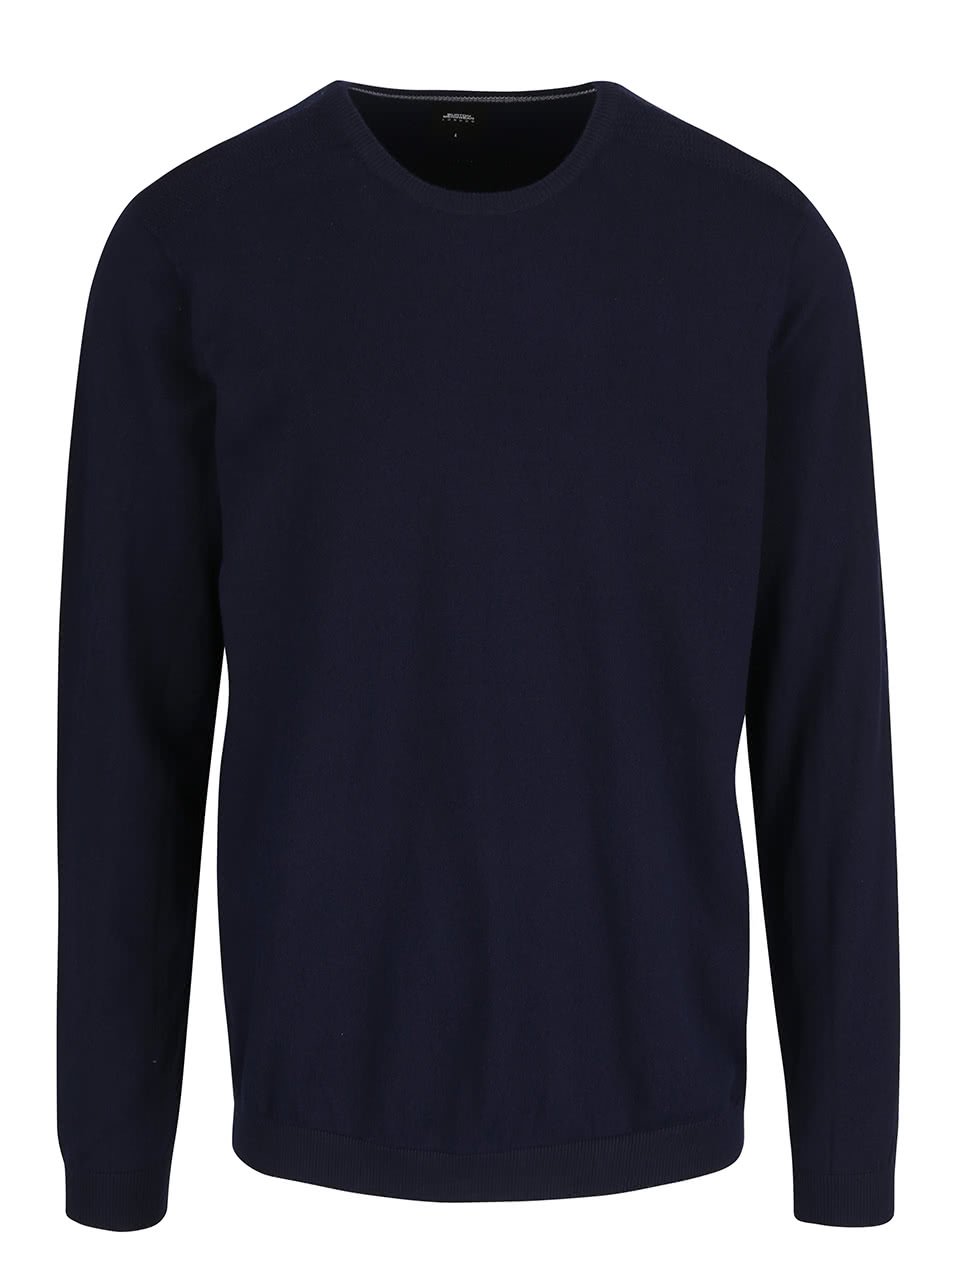 Tmavě modrý svetr Burton Menswear London